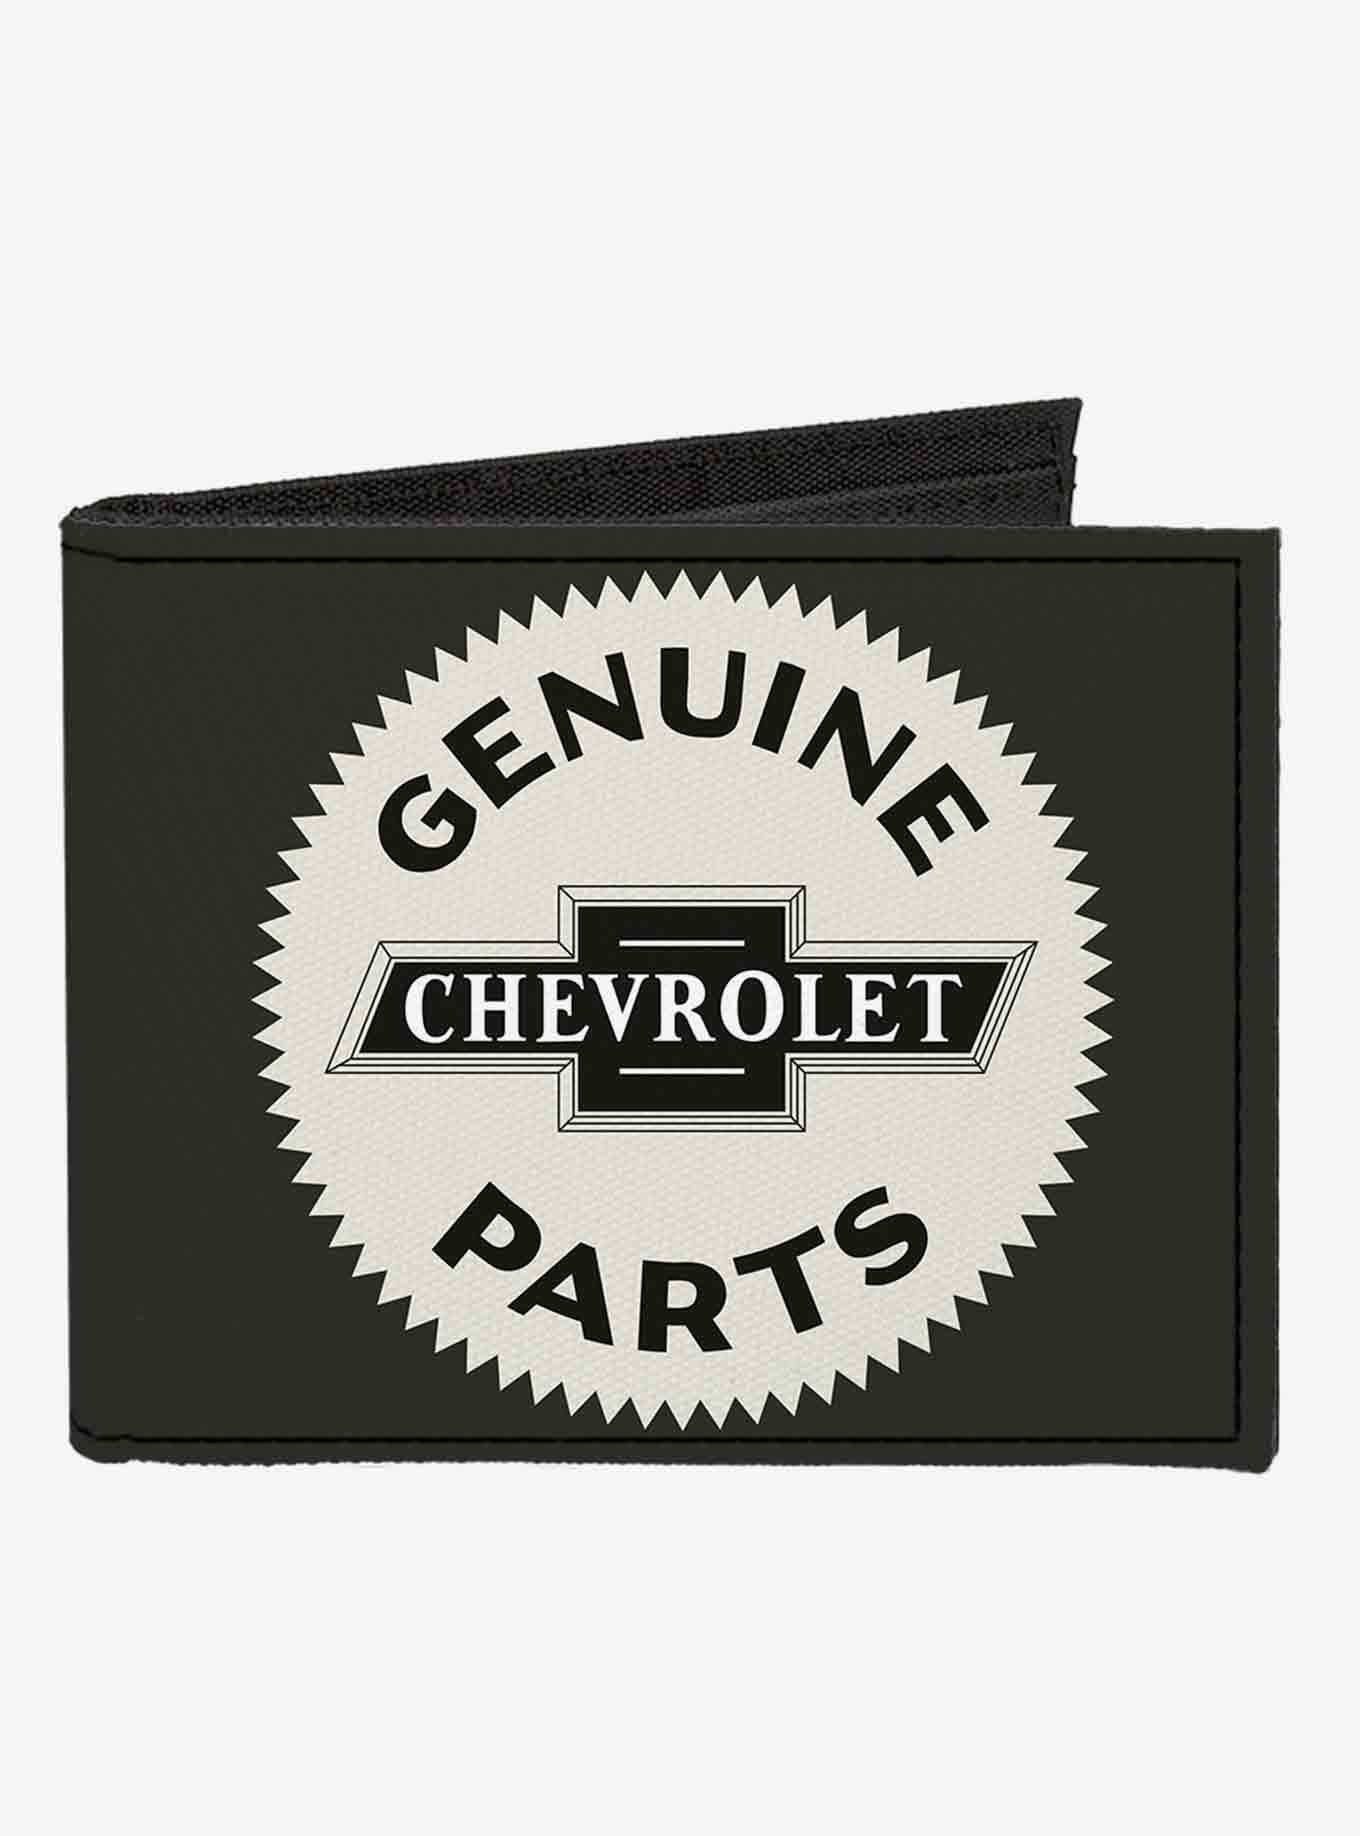 1920 Genuine Chevrolet Parts Seal Canvas Bifold Wallet, , hi-res